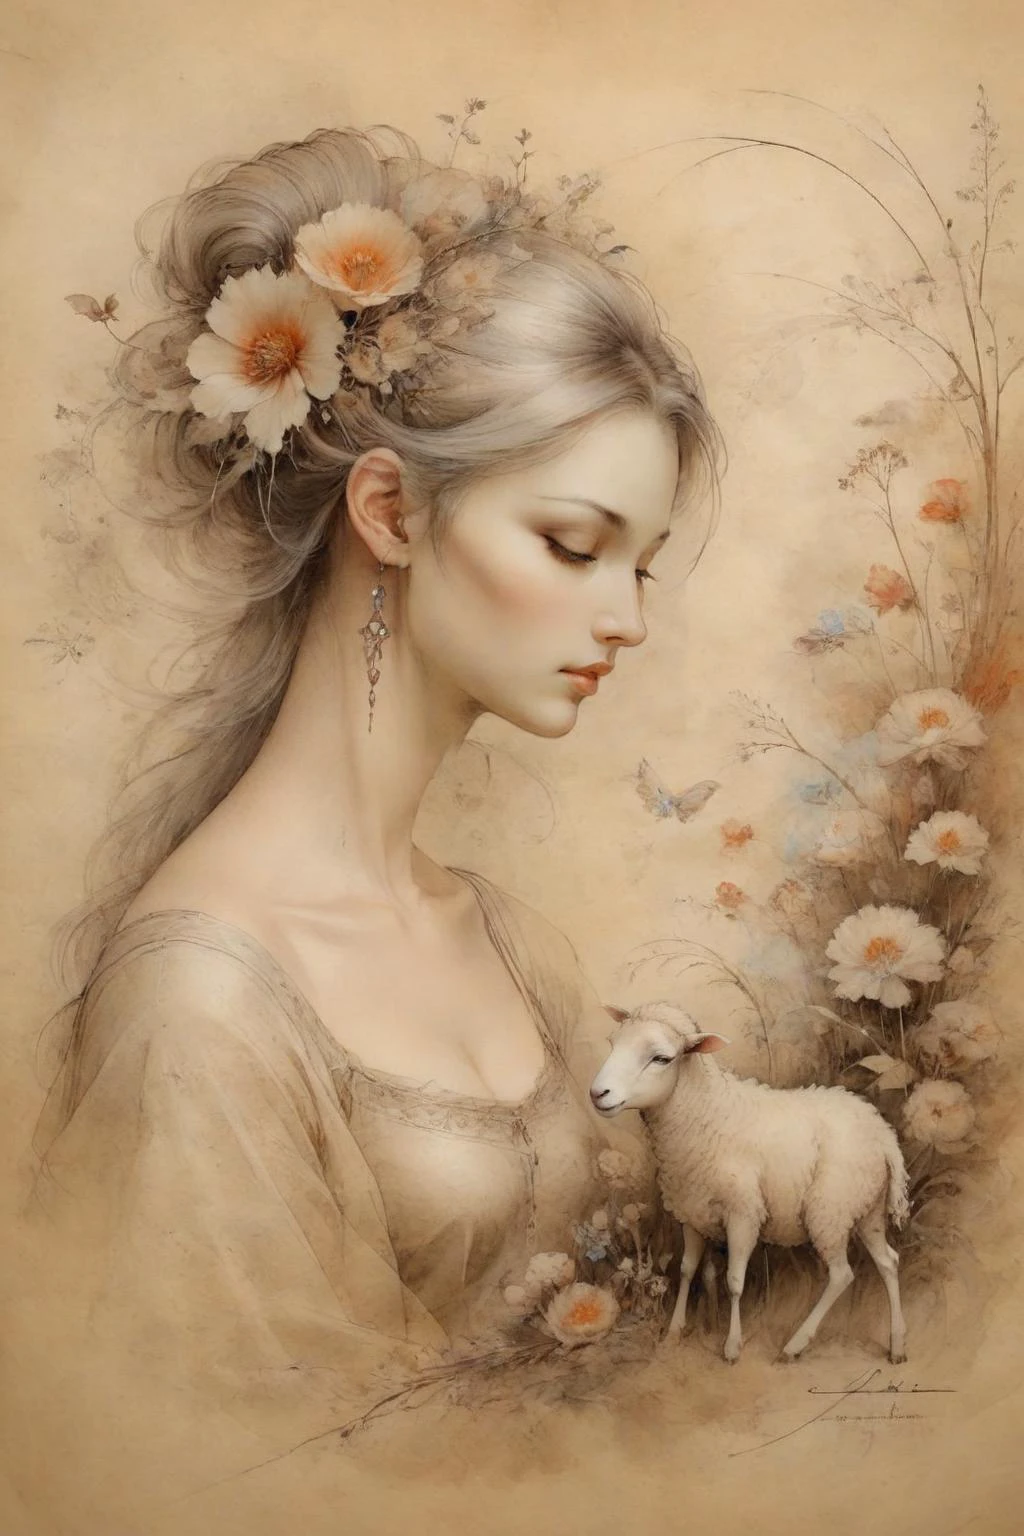 安妮·巴舍利尔 (Anne Bachelier) 风格的女孩,令人惊叹的美丽,绘于羊皮纸上,放羊,很多花,春天的气息,宁静,奇幻风格,华丽的细节,复杂的细节,杰作,美术,巴洛克风格与田园风情的融合,羊皮纸上,INK 羊皮纸上,